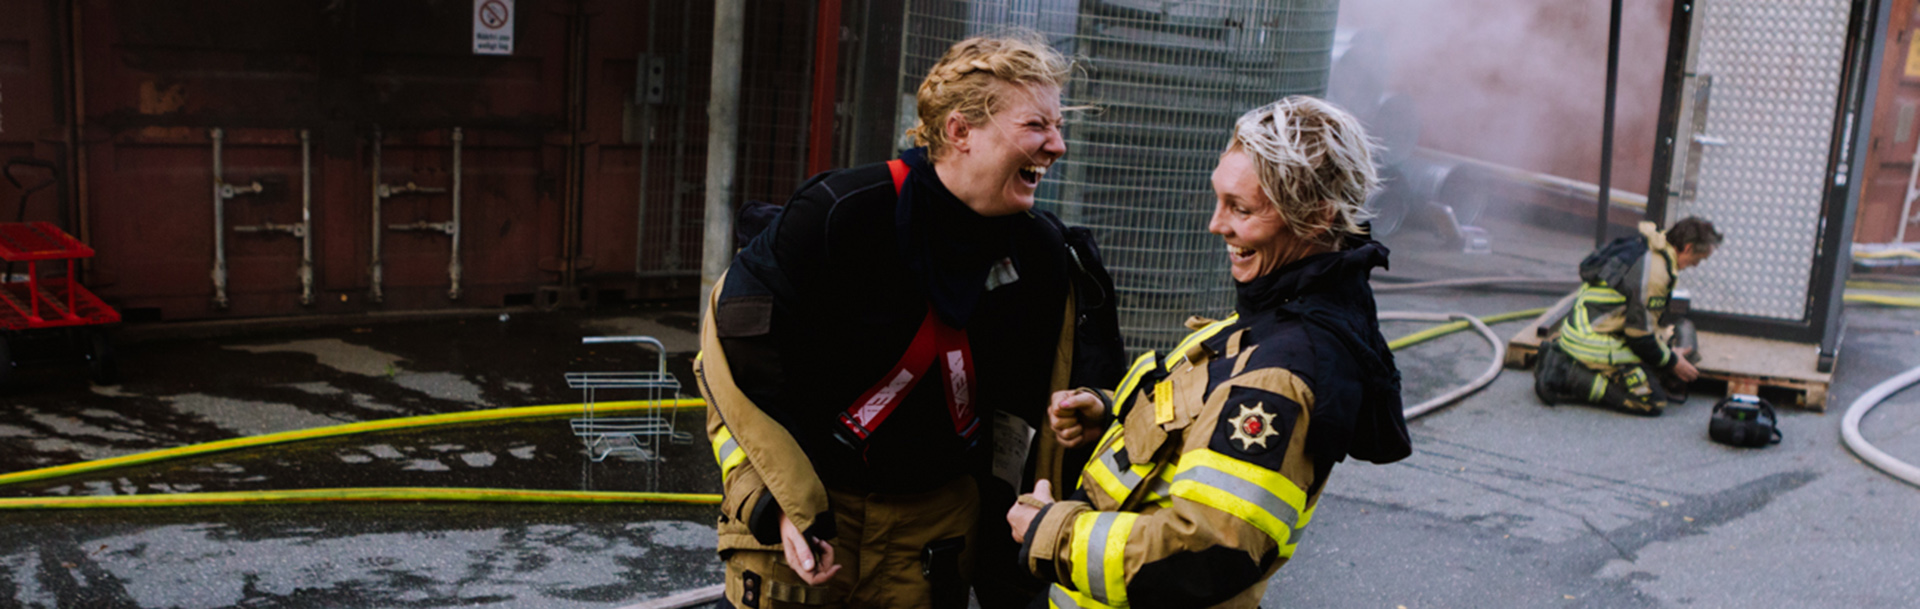 Två brandmän på övning som skrattar tillsammans
            